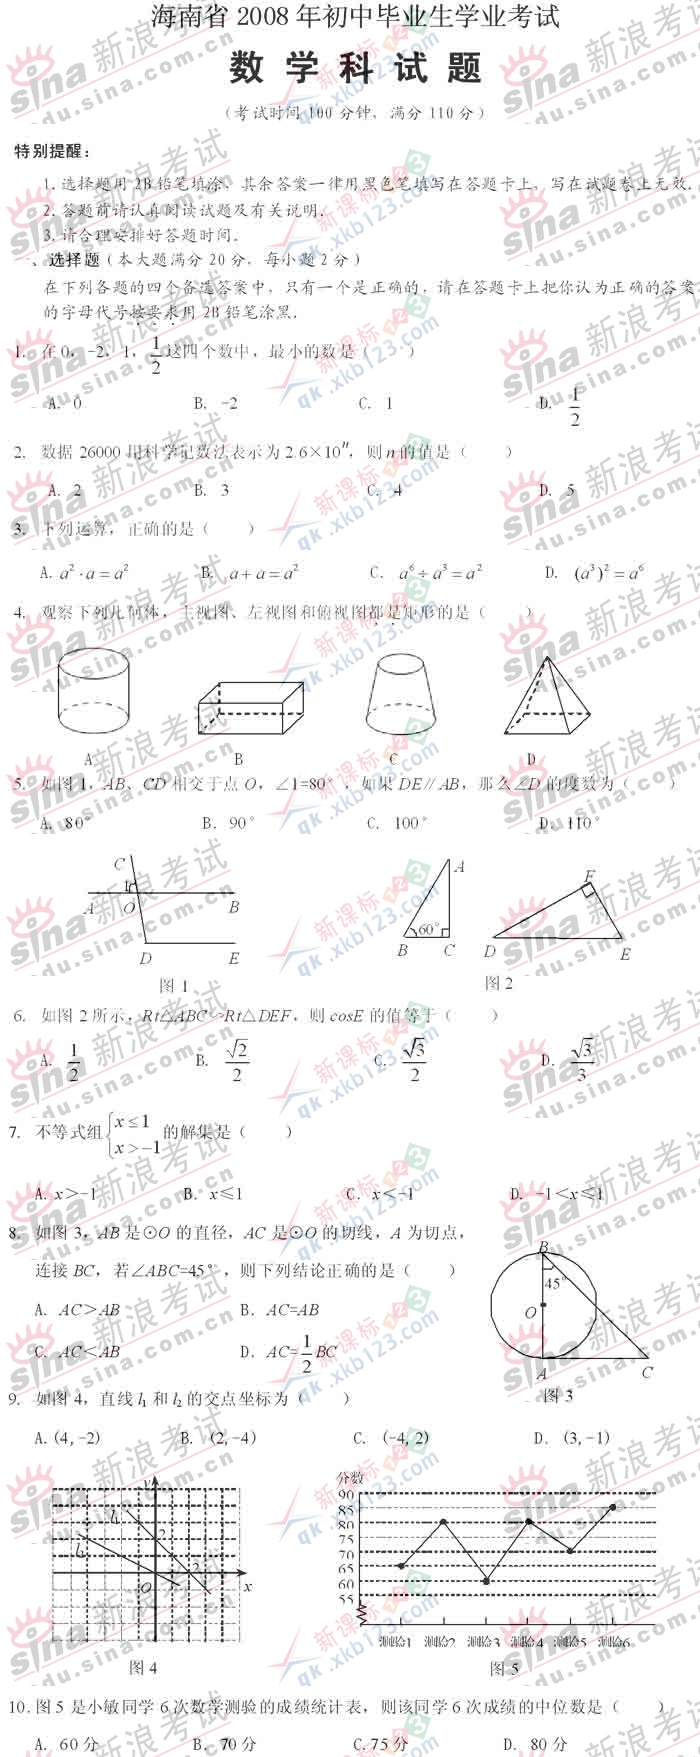 海南省2008年中考数学科试题及参考答案